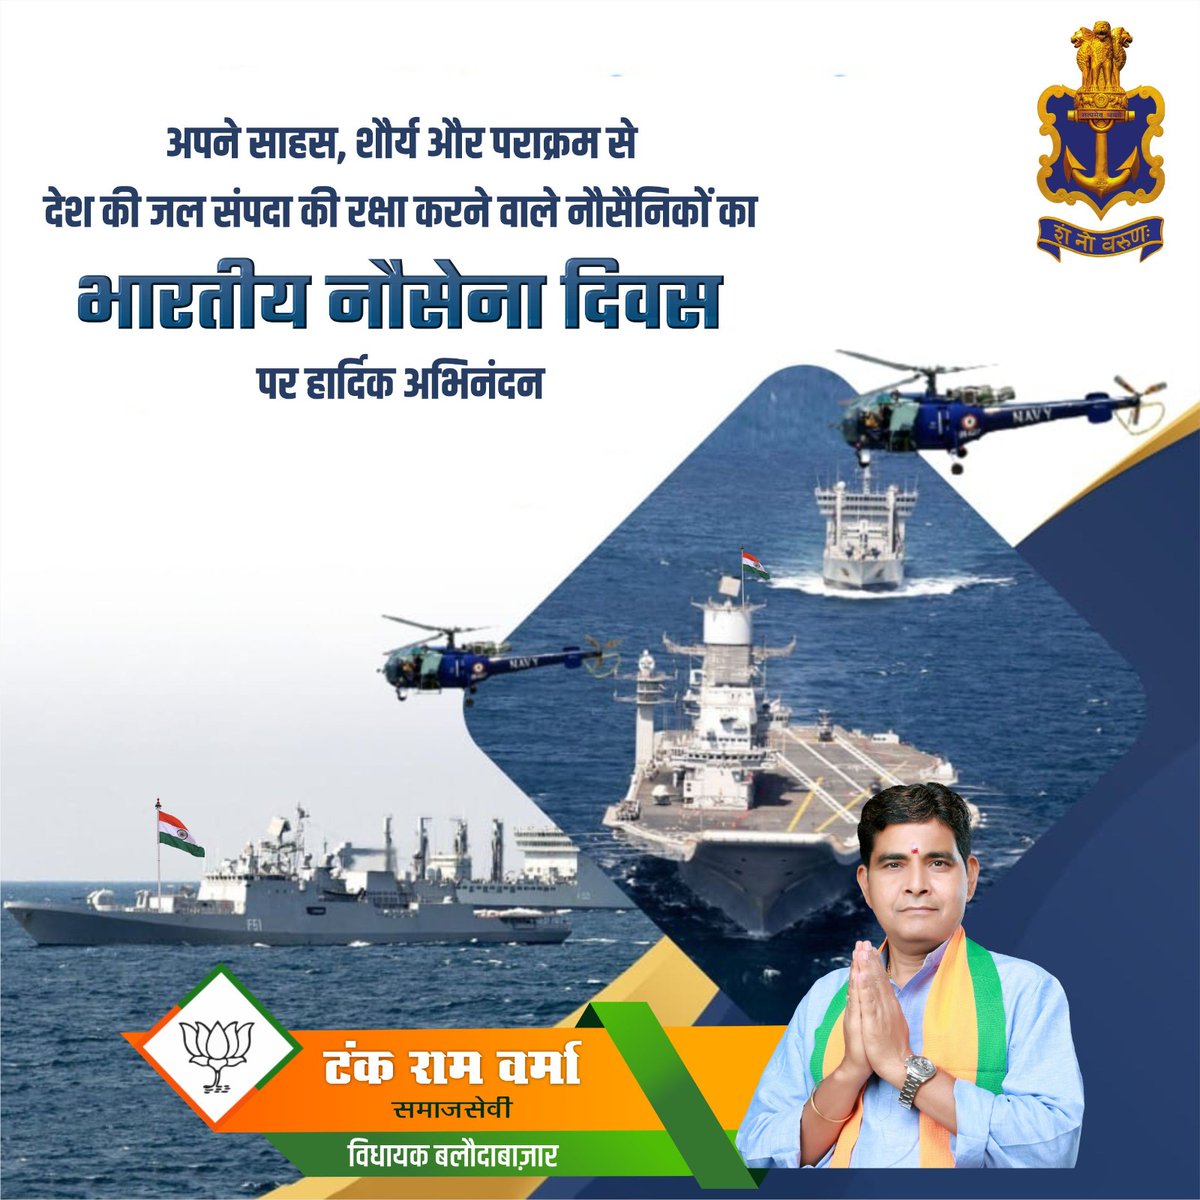 अपने साहस, शौर्य और पराक्रम से देश की जल संपदा की रक्षा करने वाले नौसैनिकों को #भारतीय_नौसेना_दिवस पर हार्दिक अभिनंदन💐🙏🏻
#IndianNavyDay #NationalNavyDay #NavyDay #NavyDay2023 #नौसेना #navyofficer #4dec